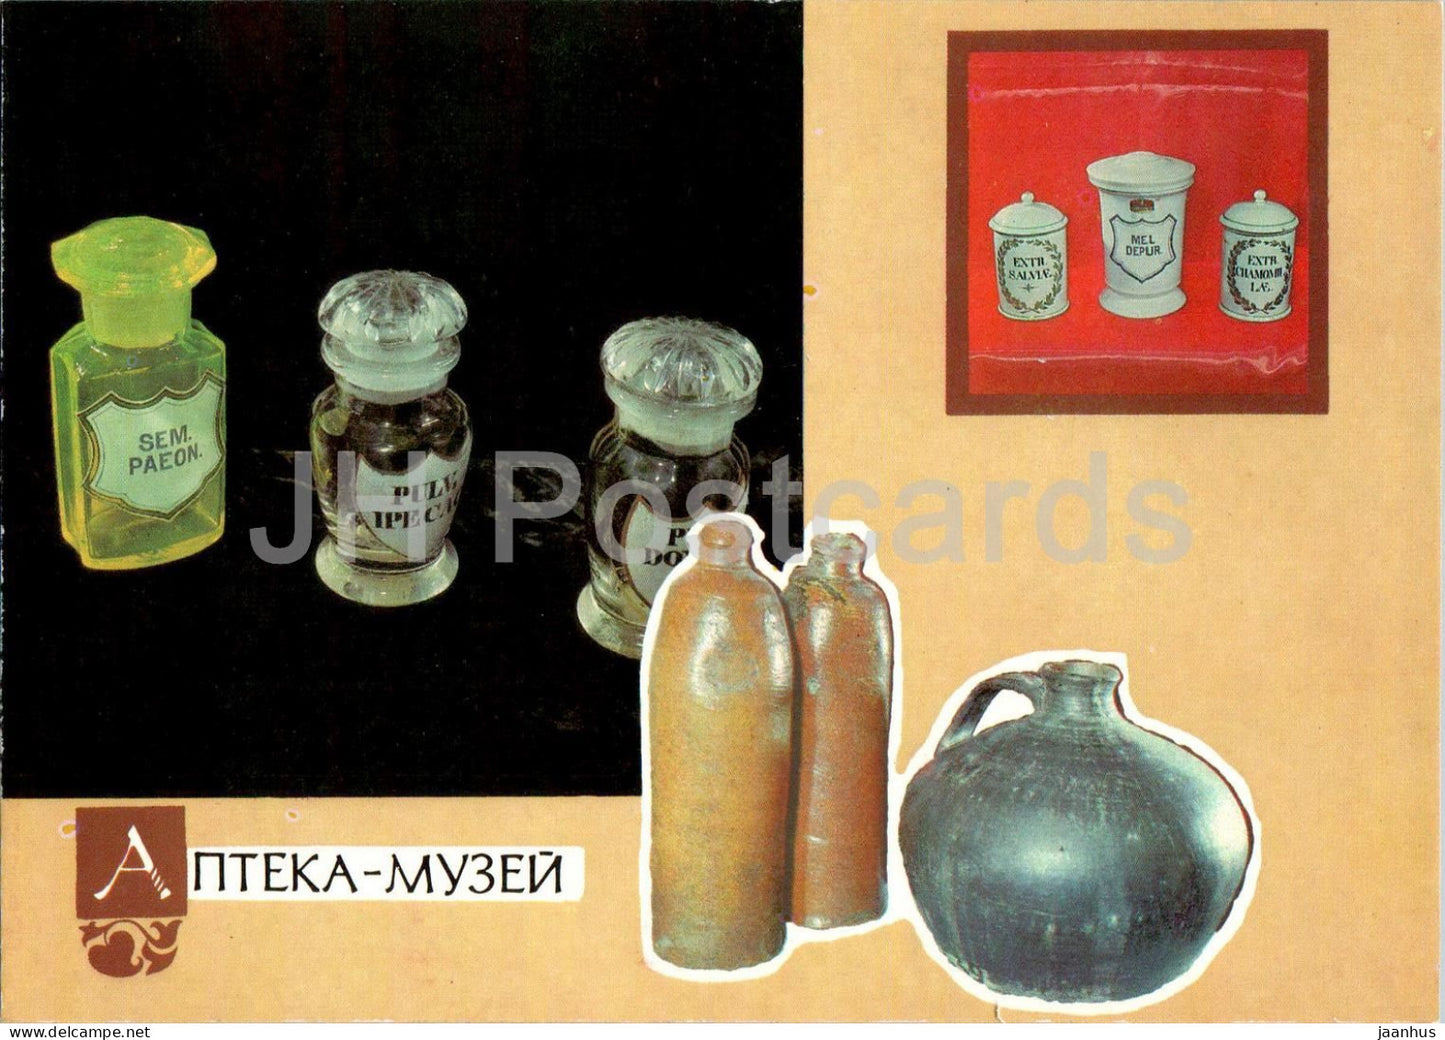 Lviv - Pharmacy Museum - Sem Paeon - Mel Depur - postal stationery - 1991 - Ukraine USSR - unused - JH Postcards